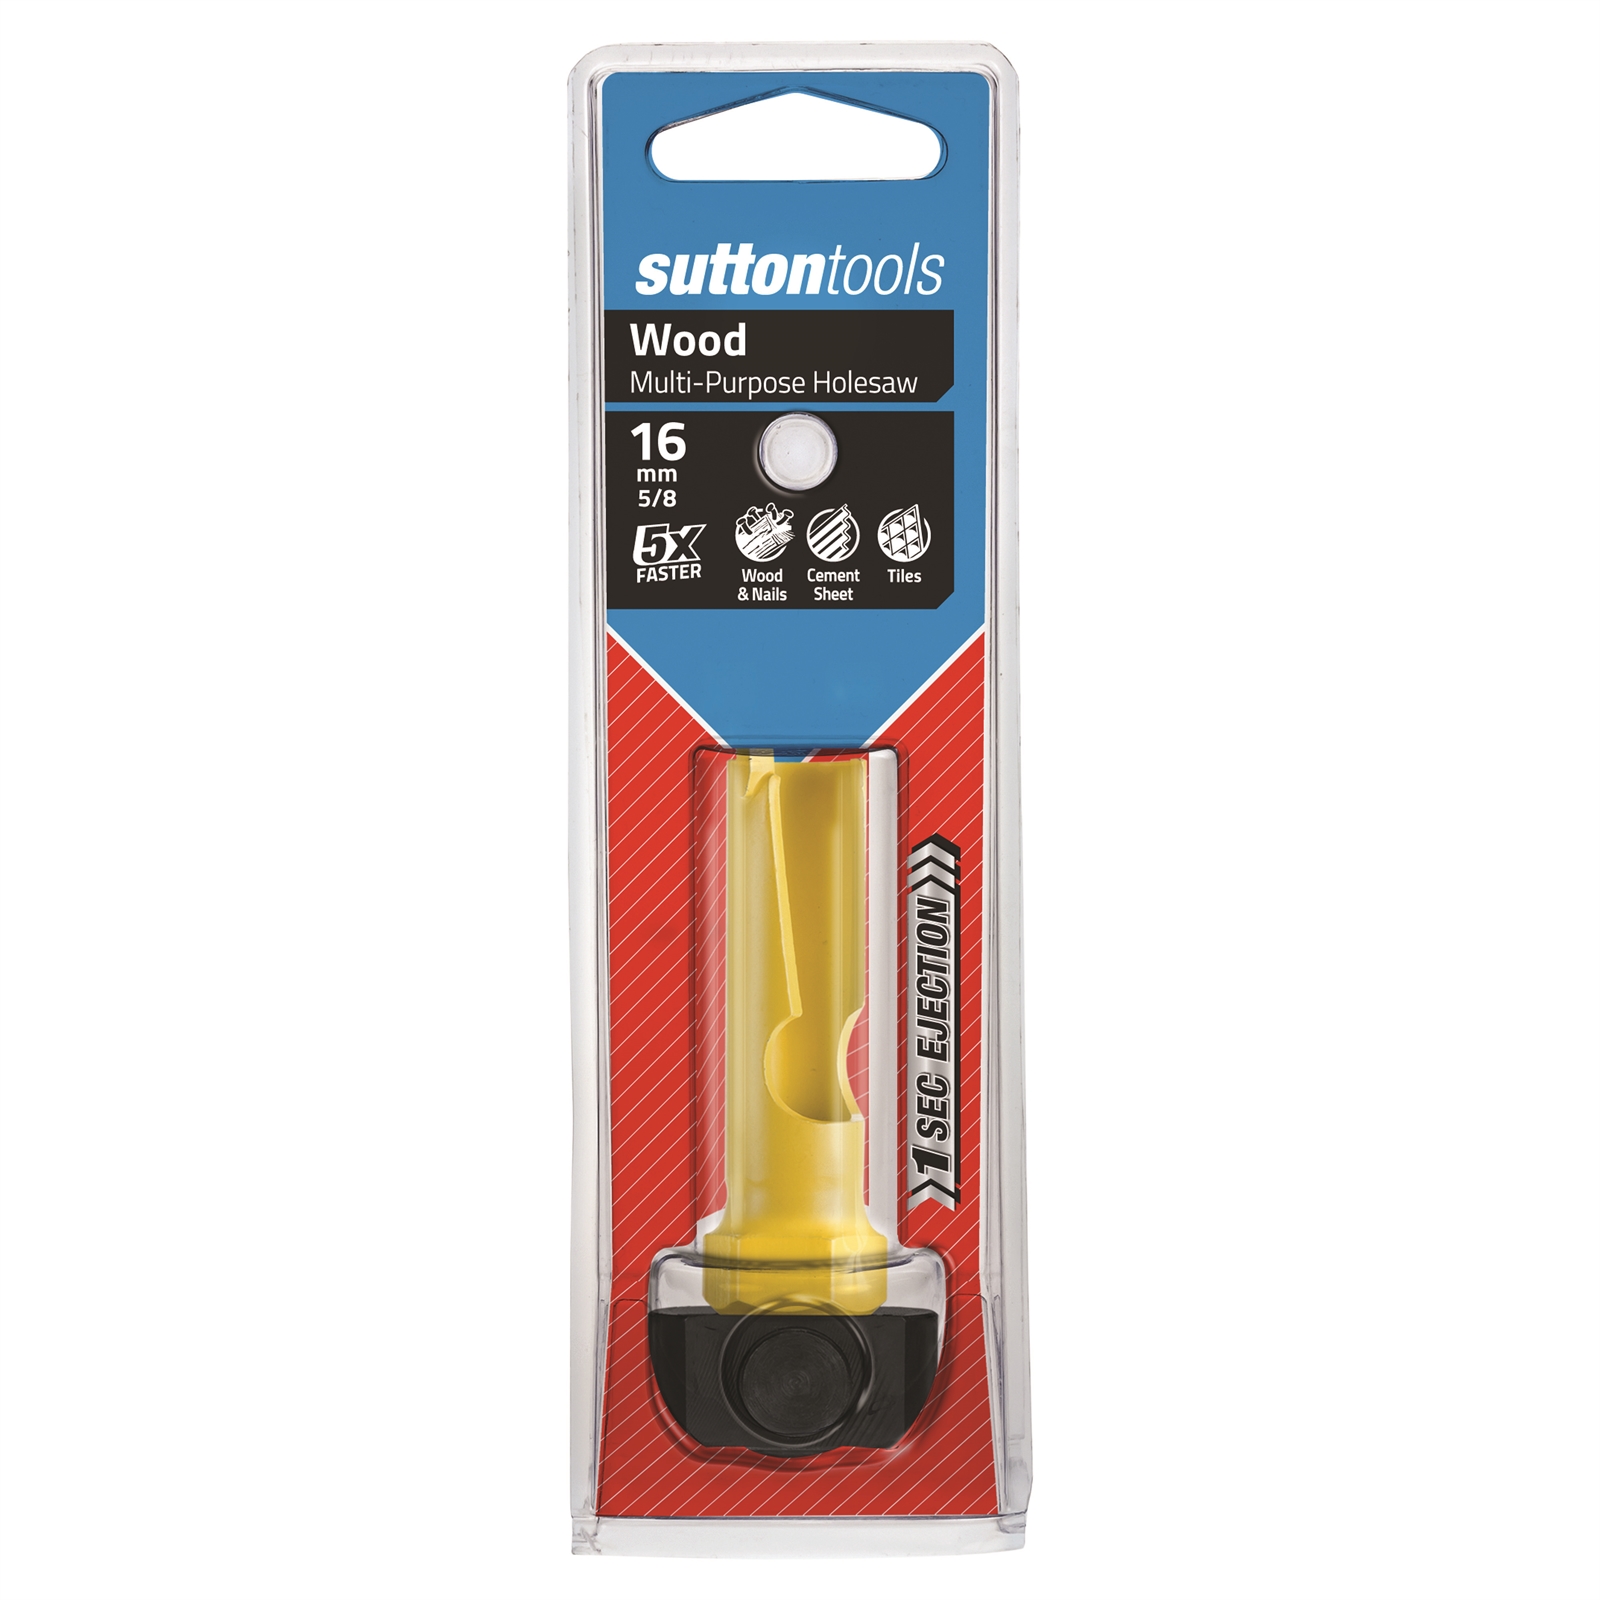 Sutton Tools 16mm Multipurpose Holesaw